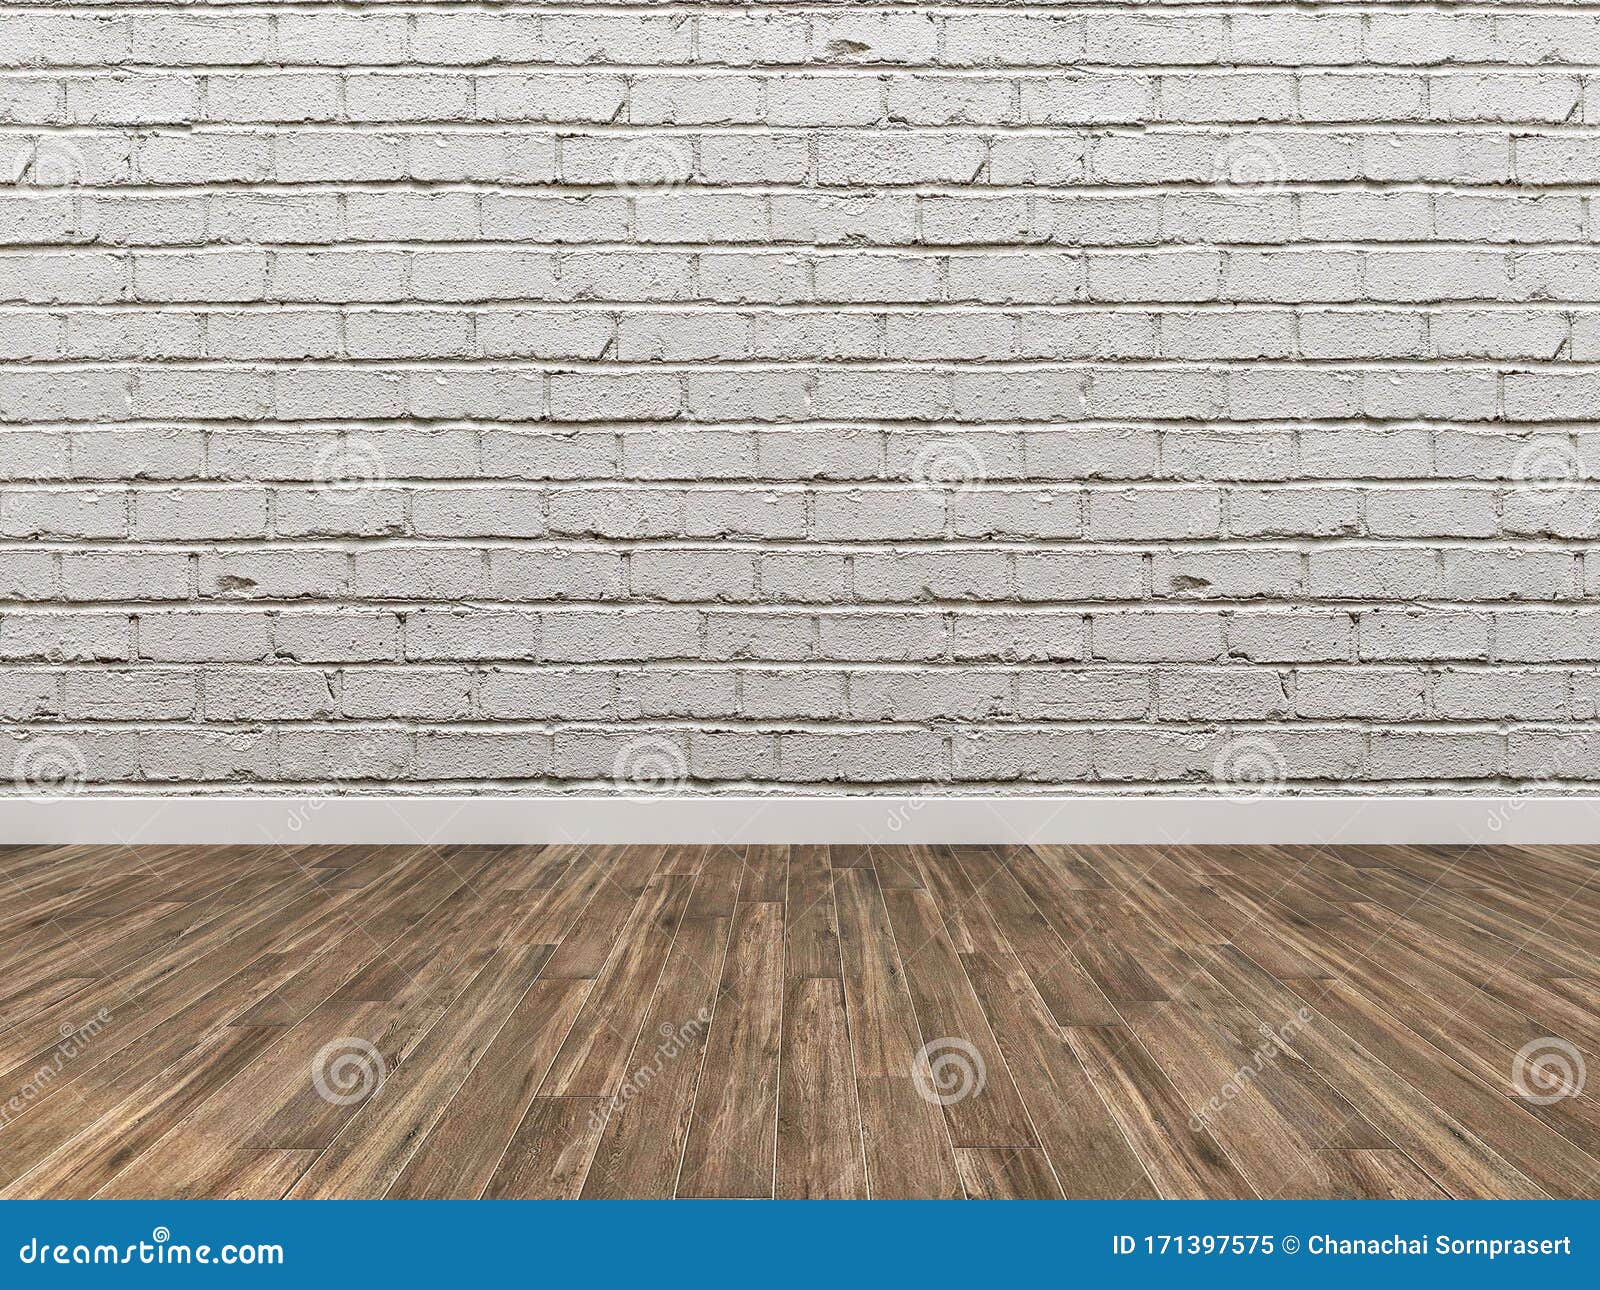 Phông nền mô phỏng phòng trống với tường sàn gỗ sẽ giúp cho việc trình bày sản phẩm của bạn trở nên dễ dàng hơn bao giờ hết. Sử dụng hình ảnh đích thực giúp hình dung rõ sản phẩm của bạn trong tương lai. Kiểm tra ngay hình ảnh mô phỏng phòng trống của chúng tôi để biết thêm chi tiết.